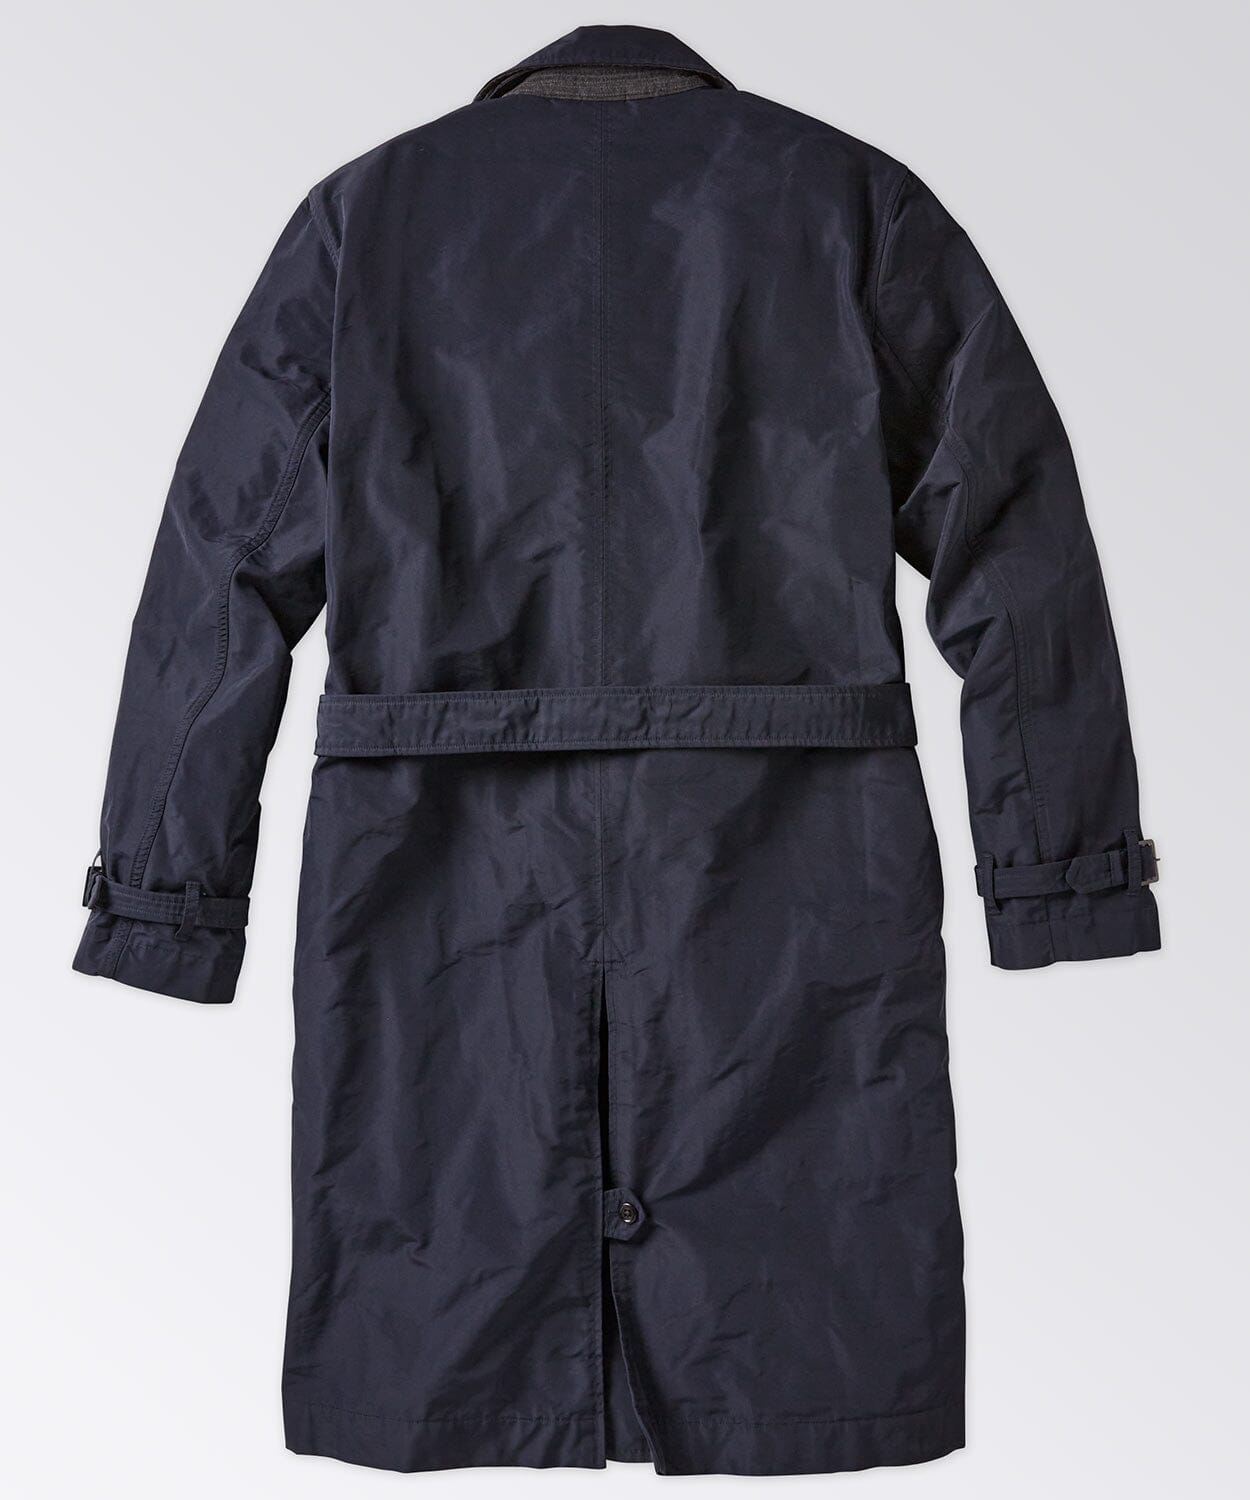 Men's trenchcoat - Widespread notch collar - Dark navy coat